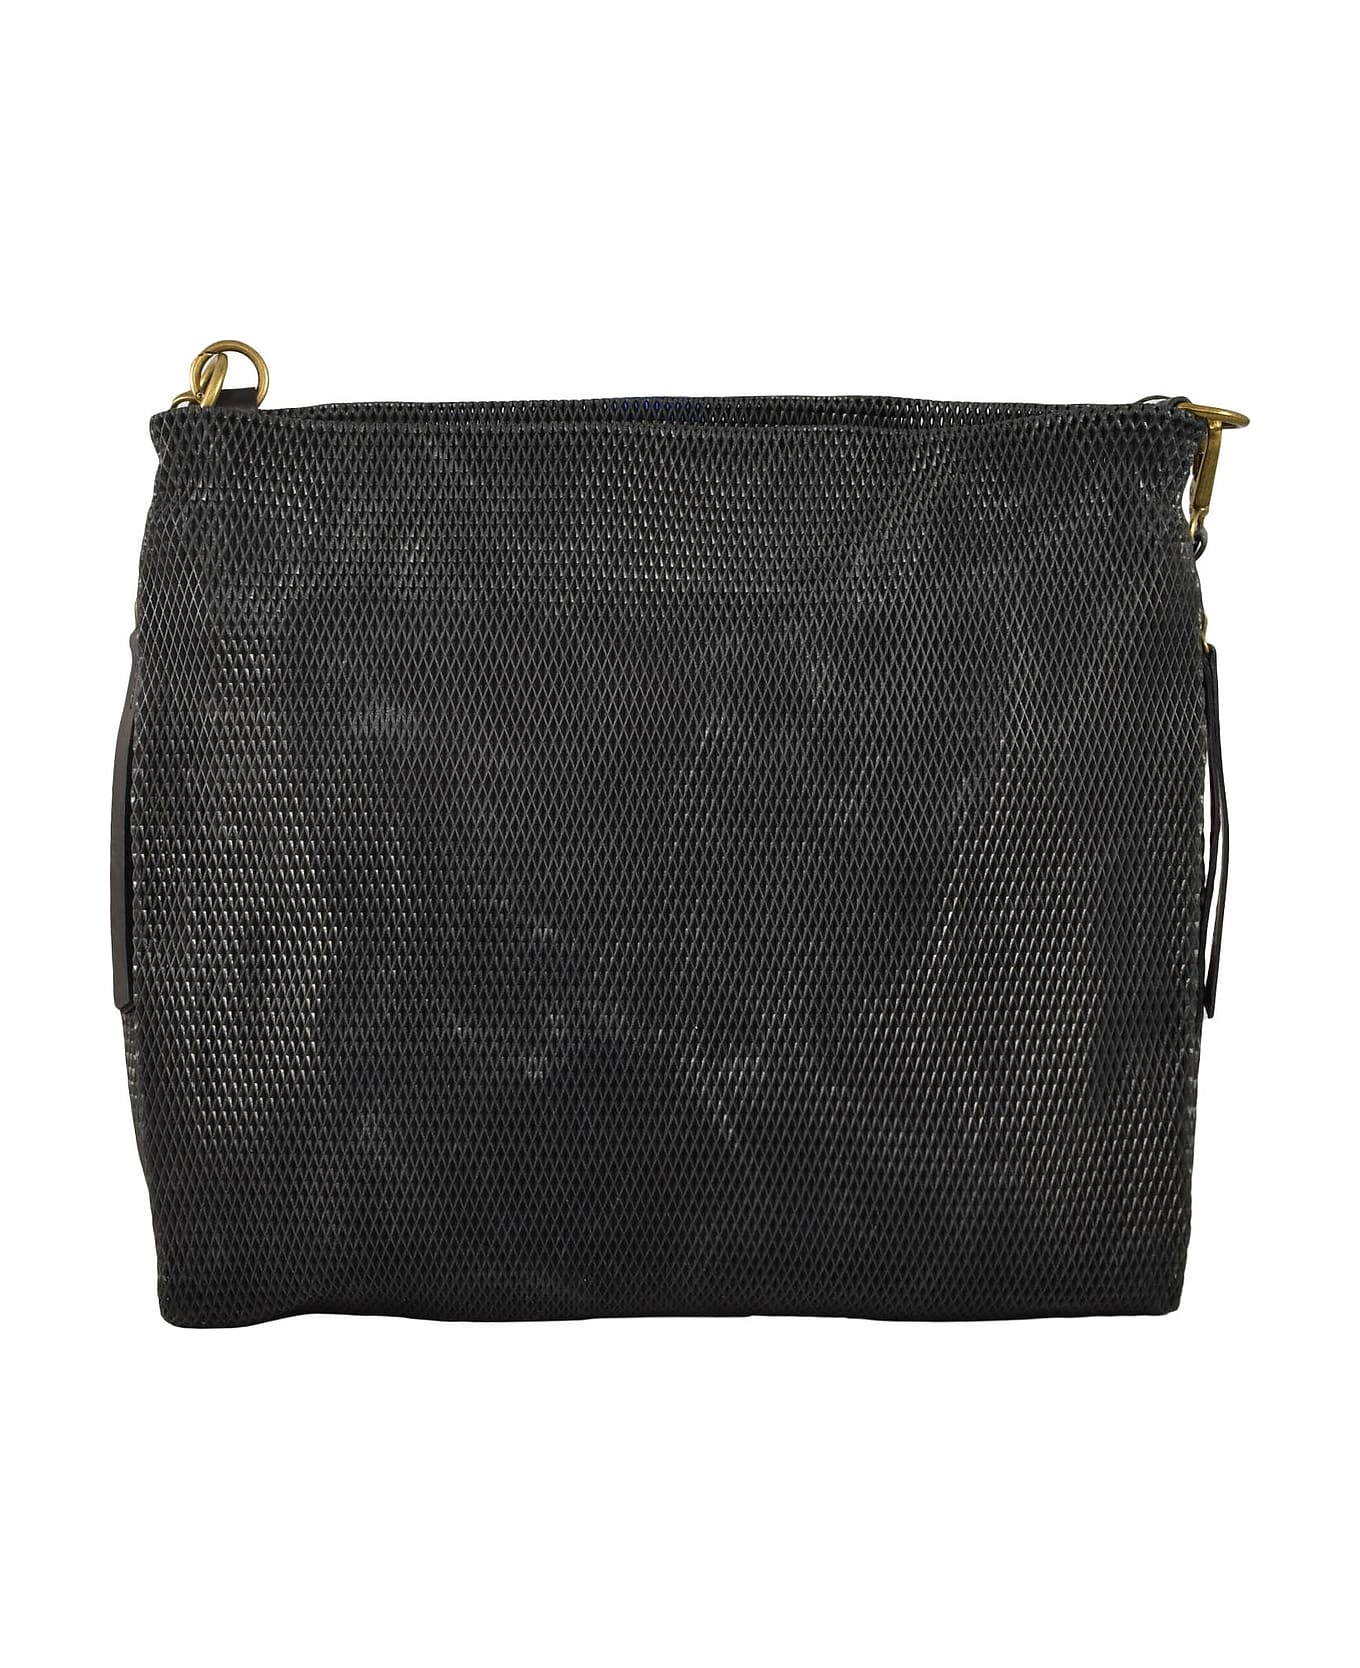 Corsia Women's Black Handbag - Black